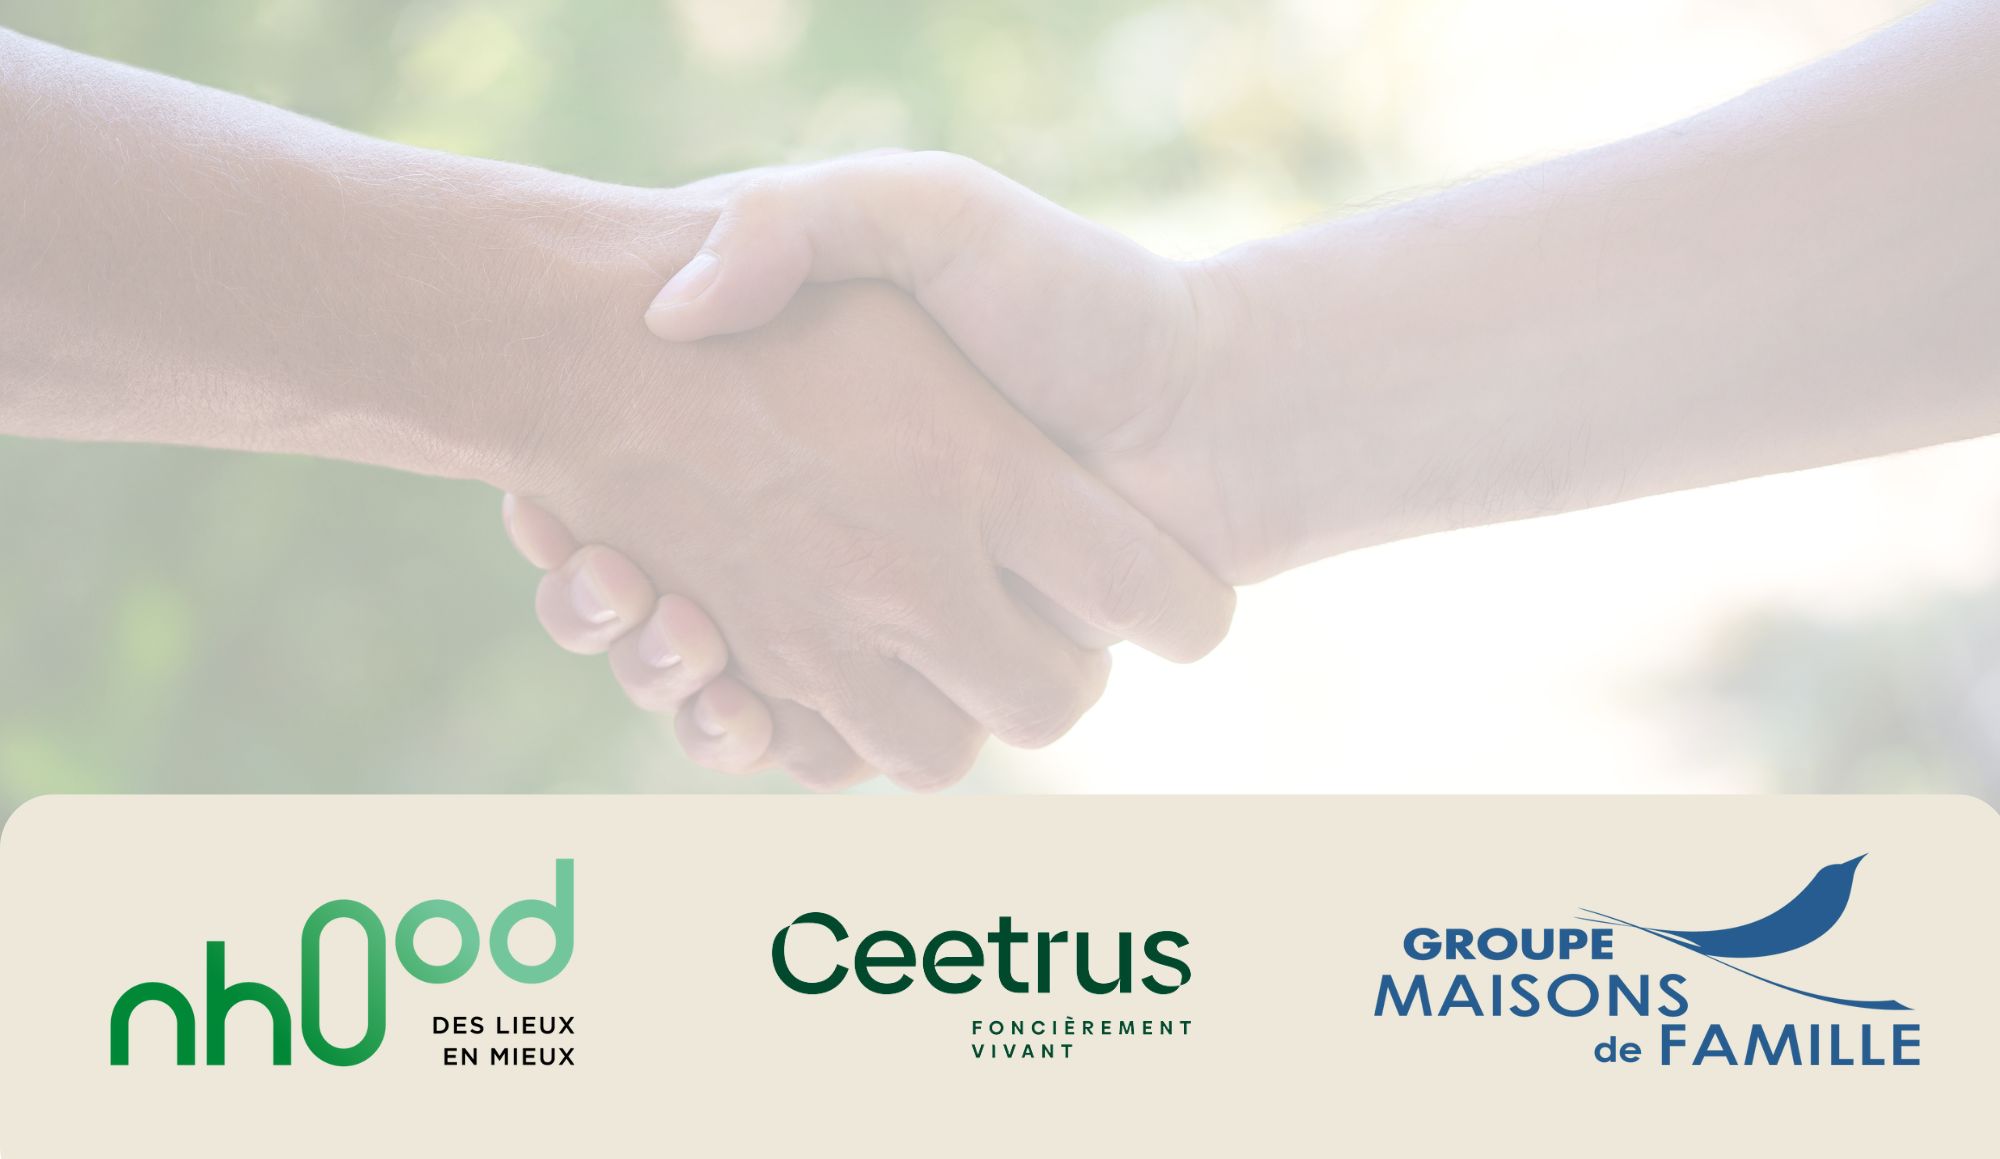 Ceetrus s’associe au Groupe Maisons de Famille afin d’engager avec Nhood la transformation durable des lieux de vie dans les territoires au service du bien-vieillir